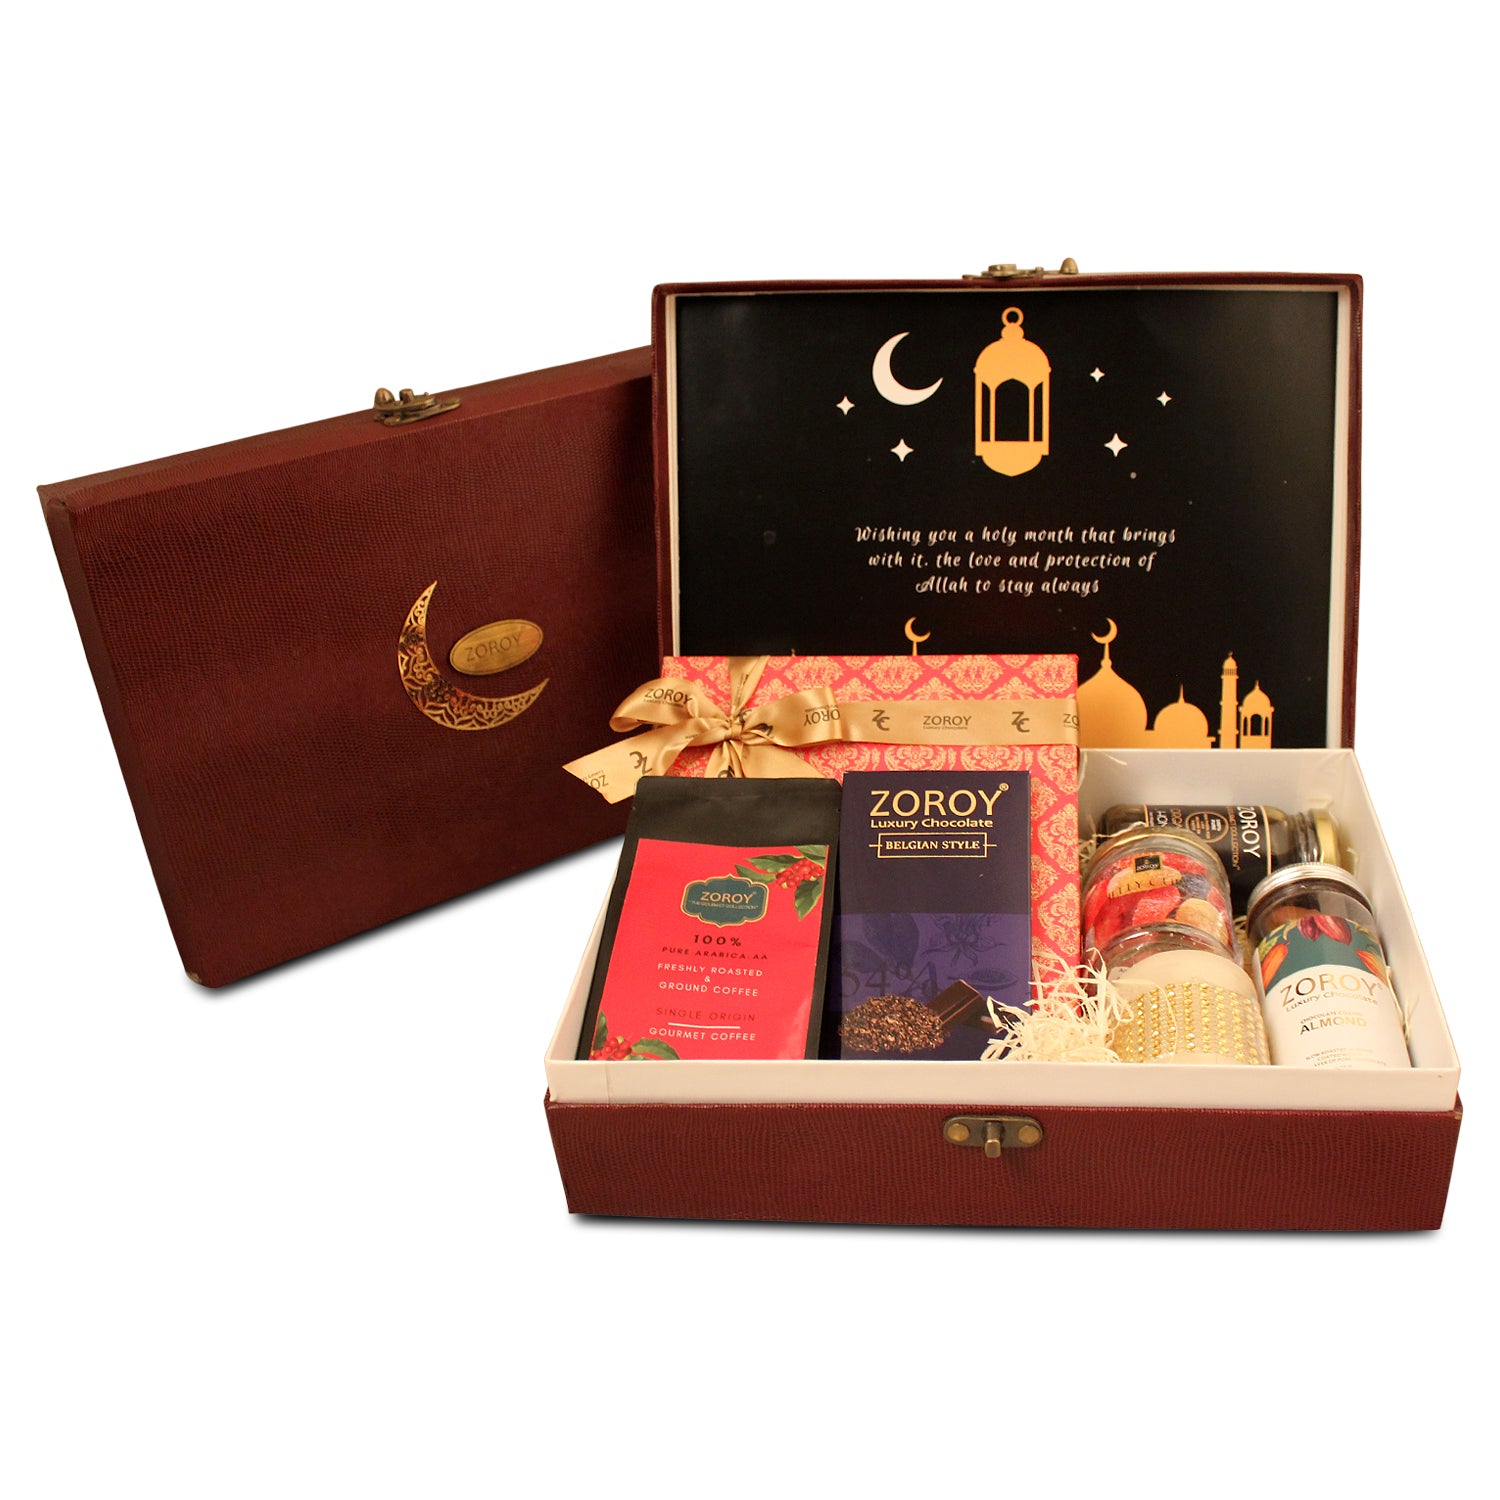 ZOROY Eid & Ramzan special Sandook Hamper of Chocolate & Assorted Goodies